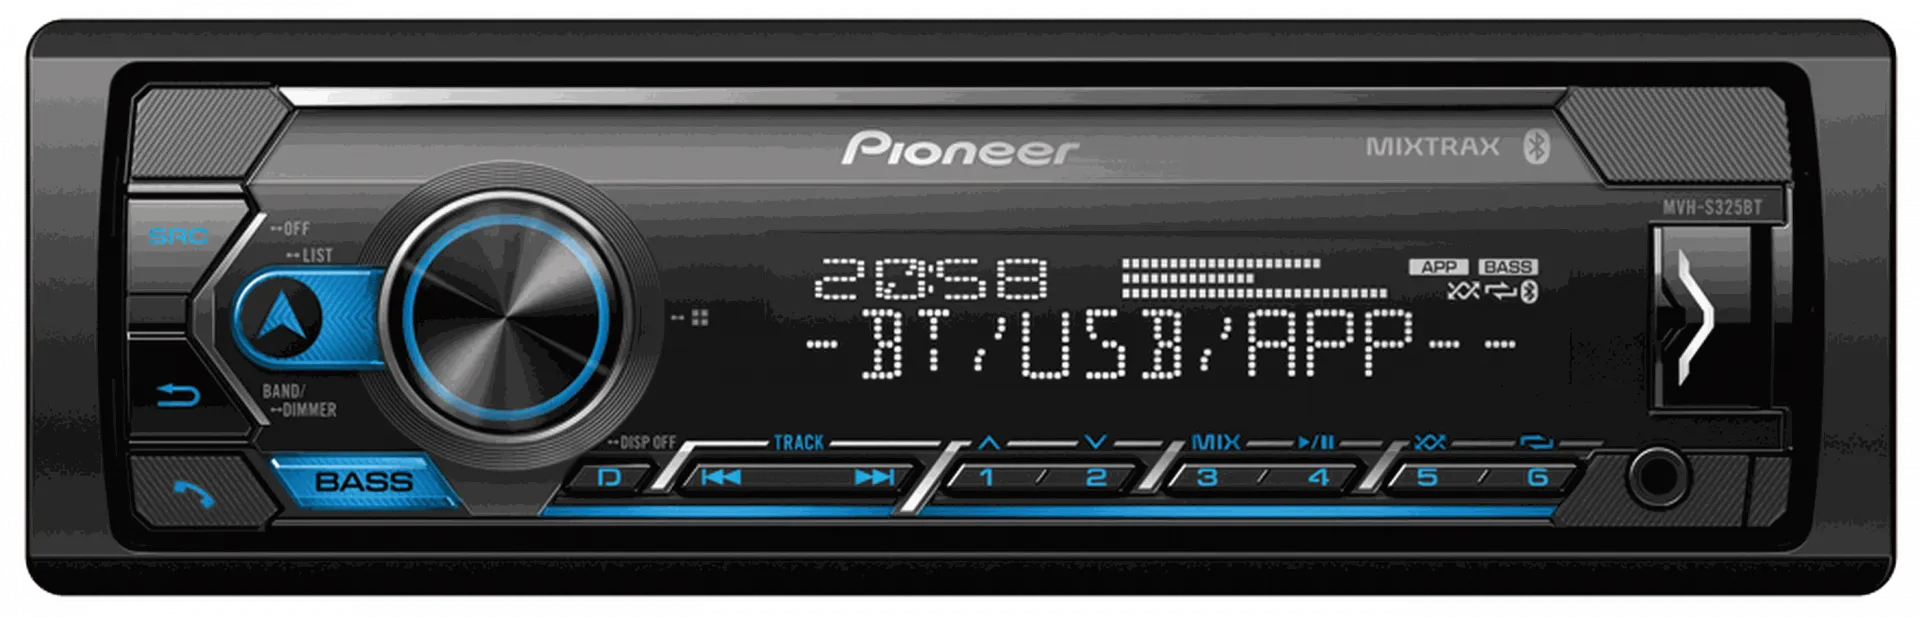 BLUETOOTH texnologiyasi bilan Pioneer MVH-S325BT avtomobil radiosi#1